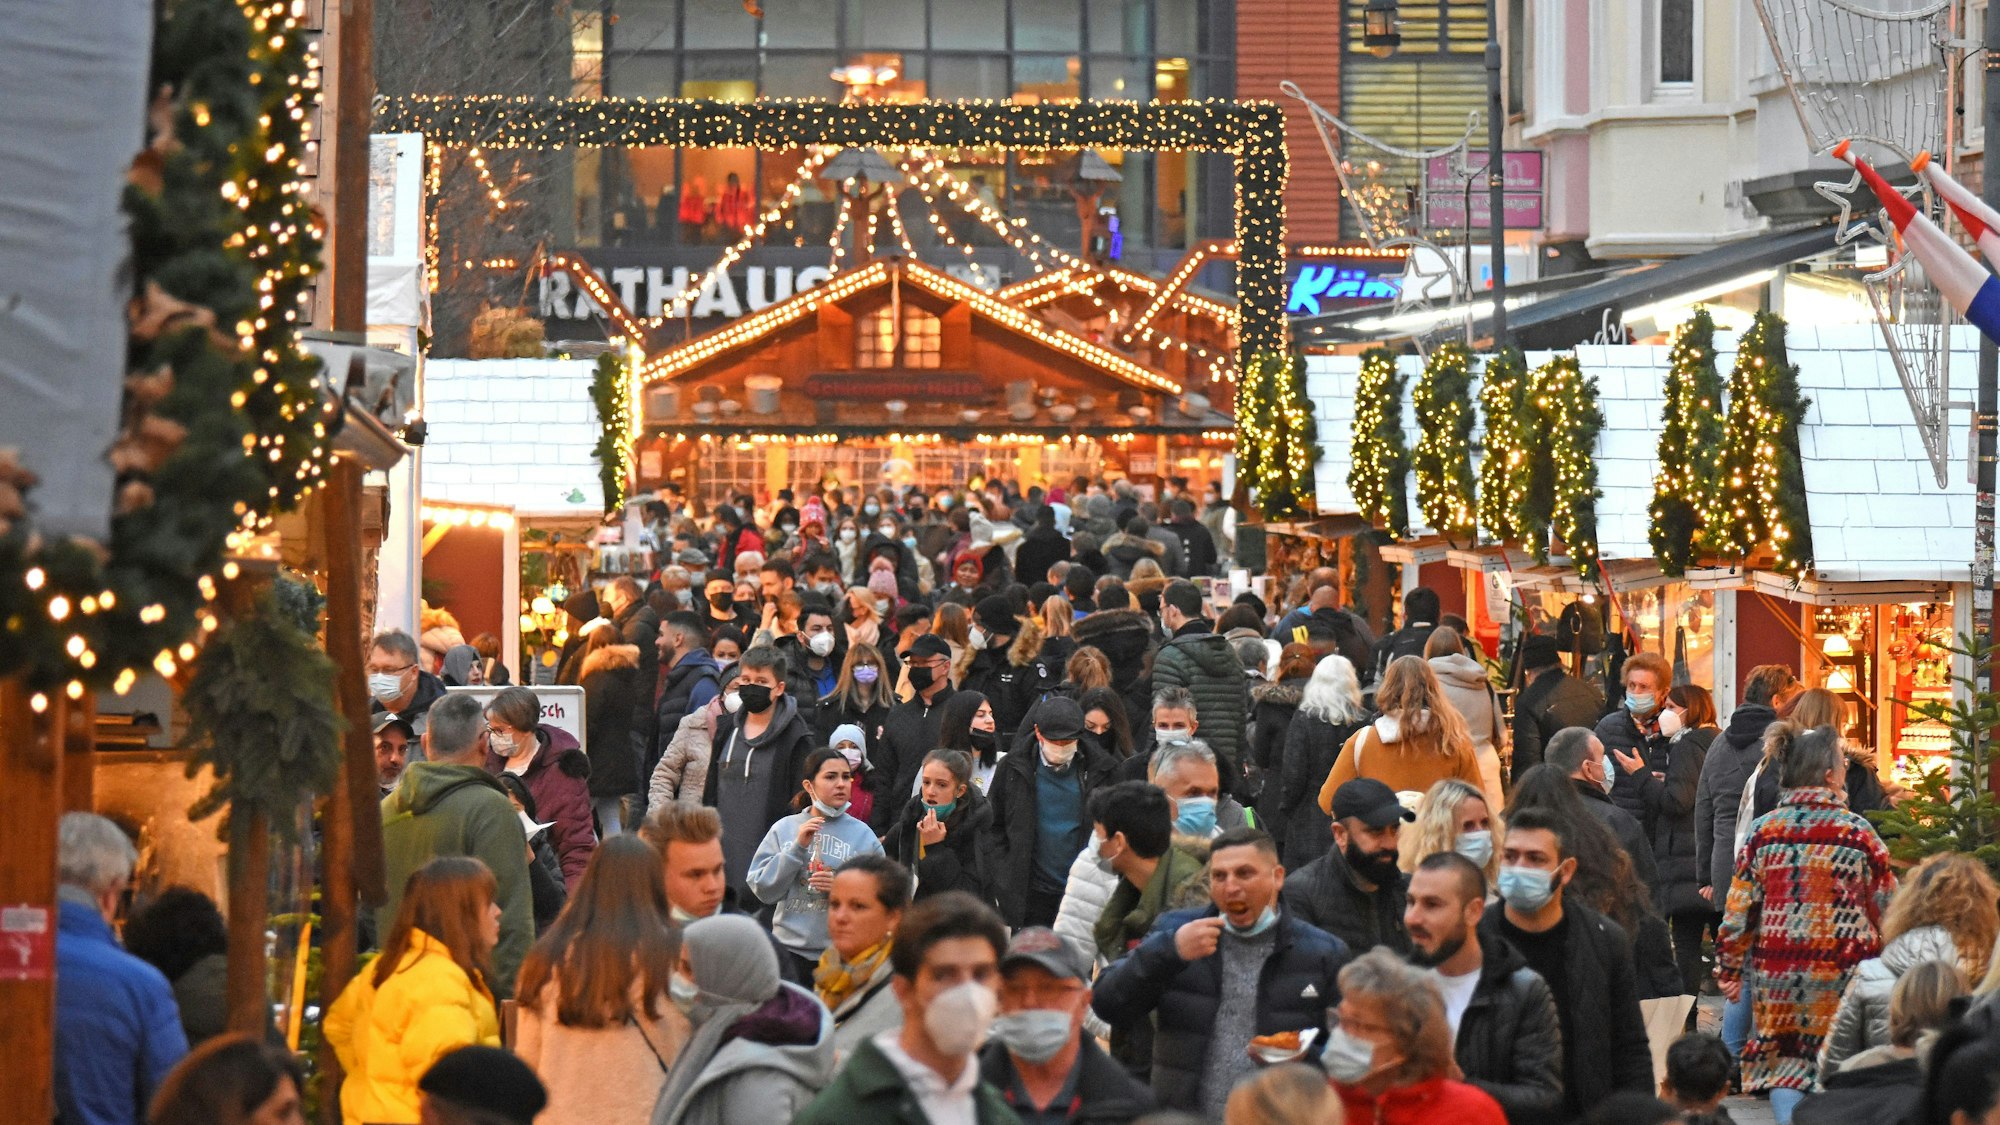 Weihnachtsmarkt in Wiesdorf unter Corona Auflagen
Foto: Britta Berg